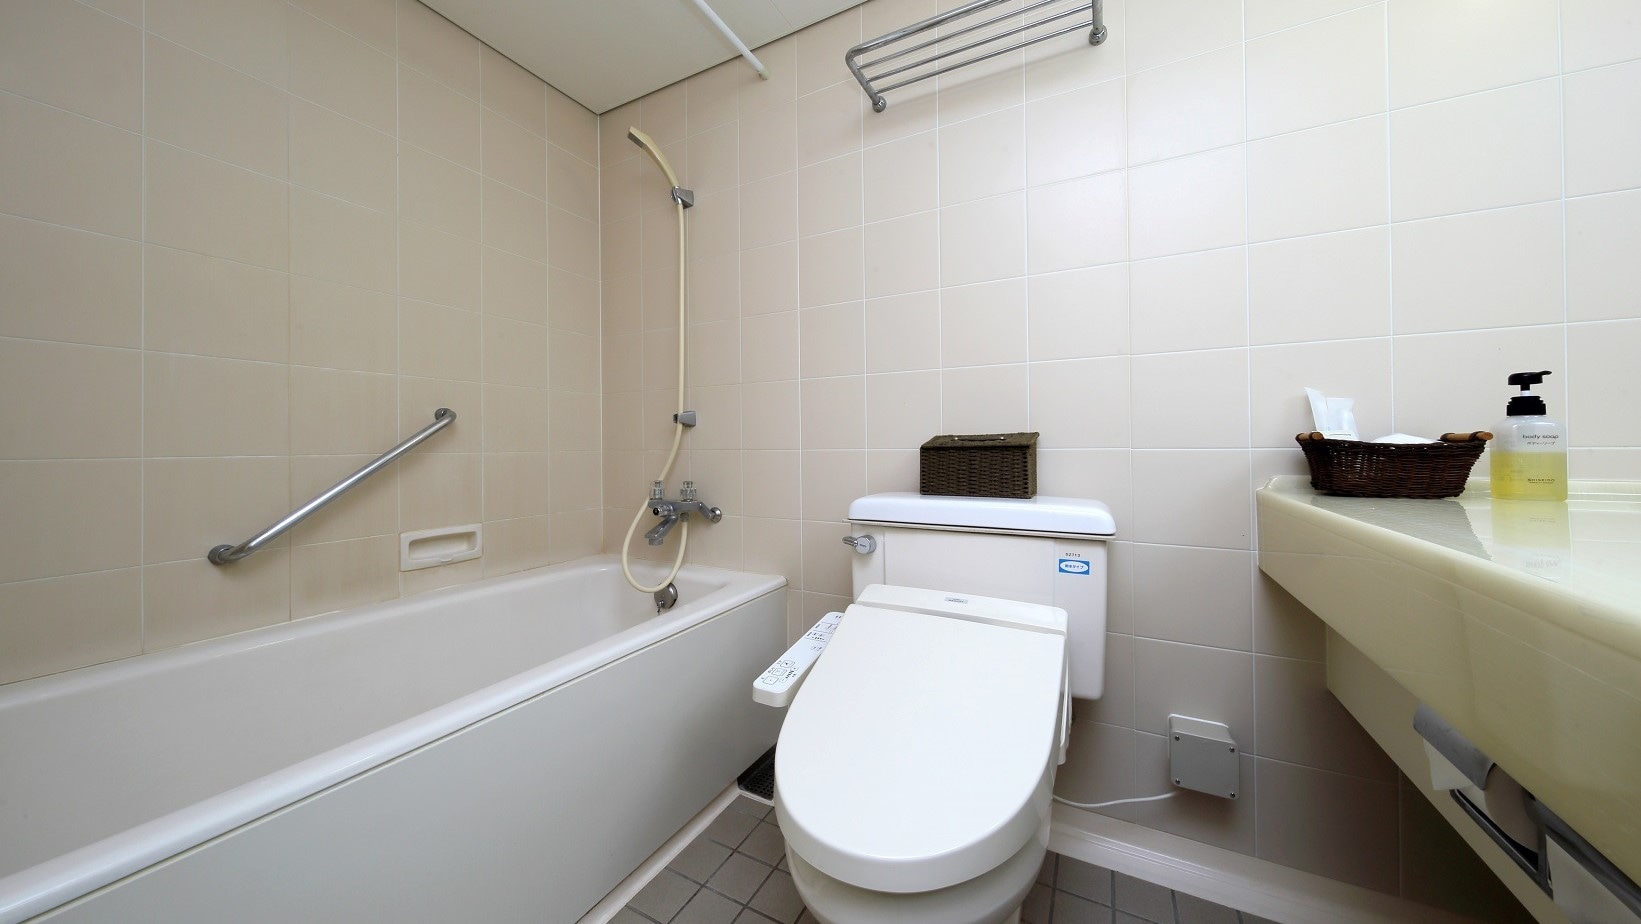 양실(2, 3층), 일본과 서양실의 화장실·화장실